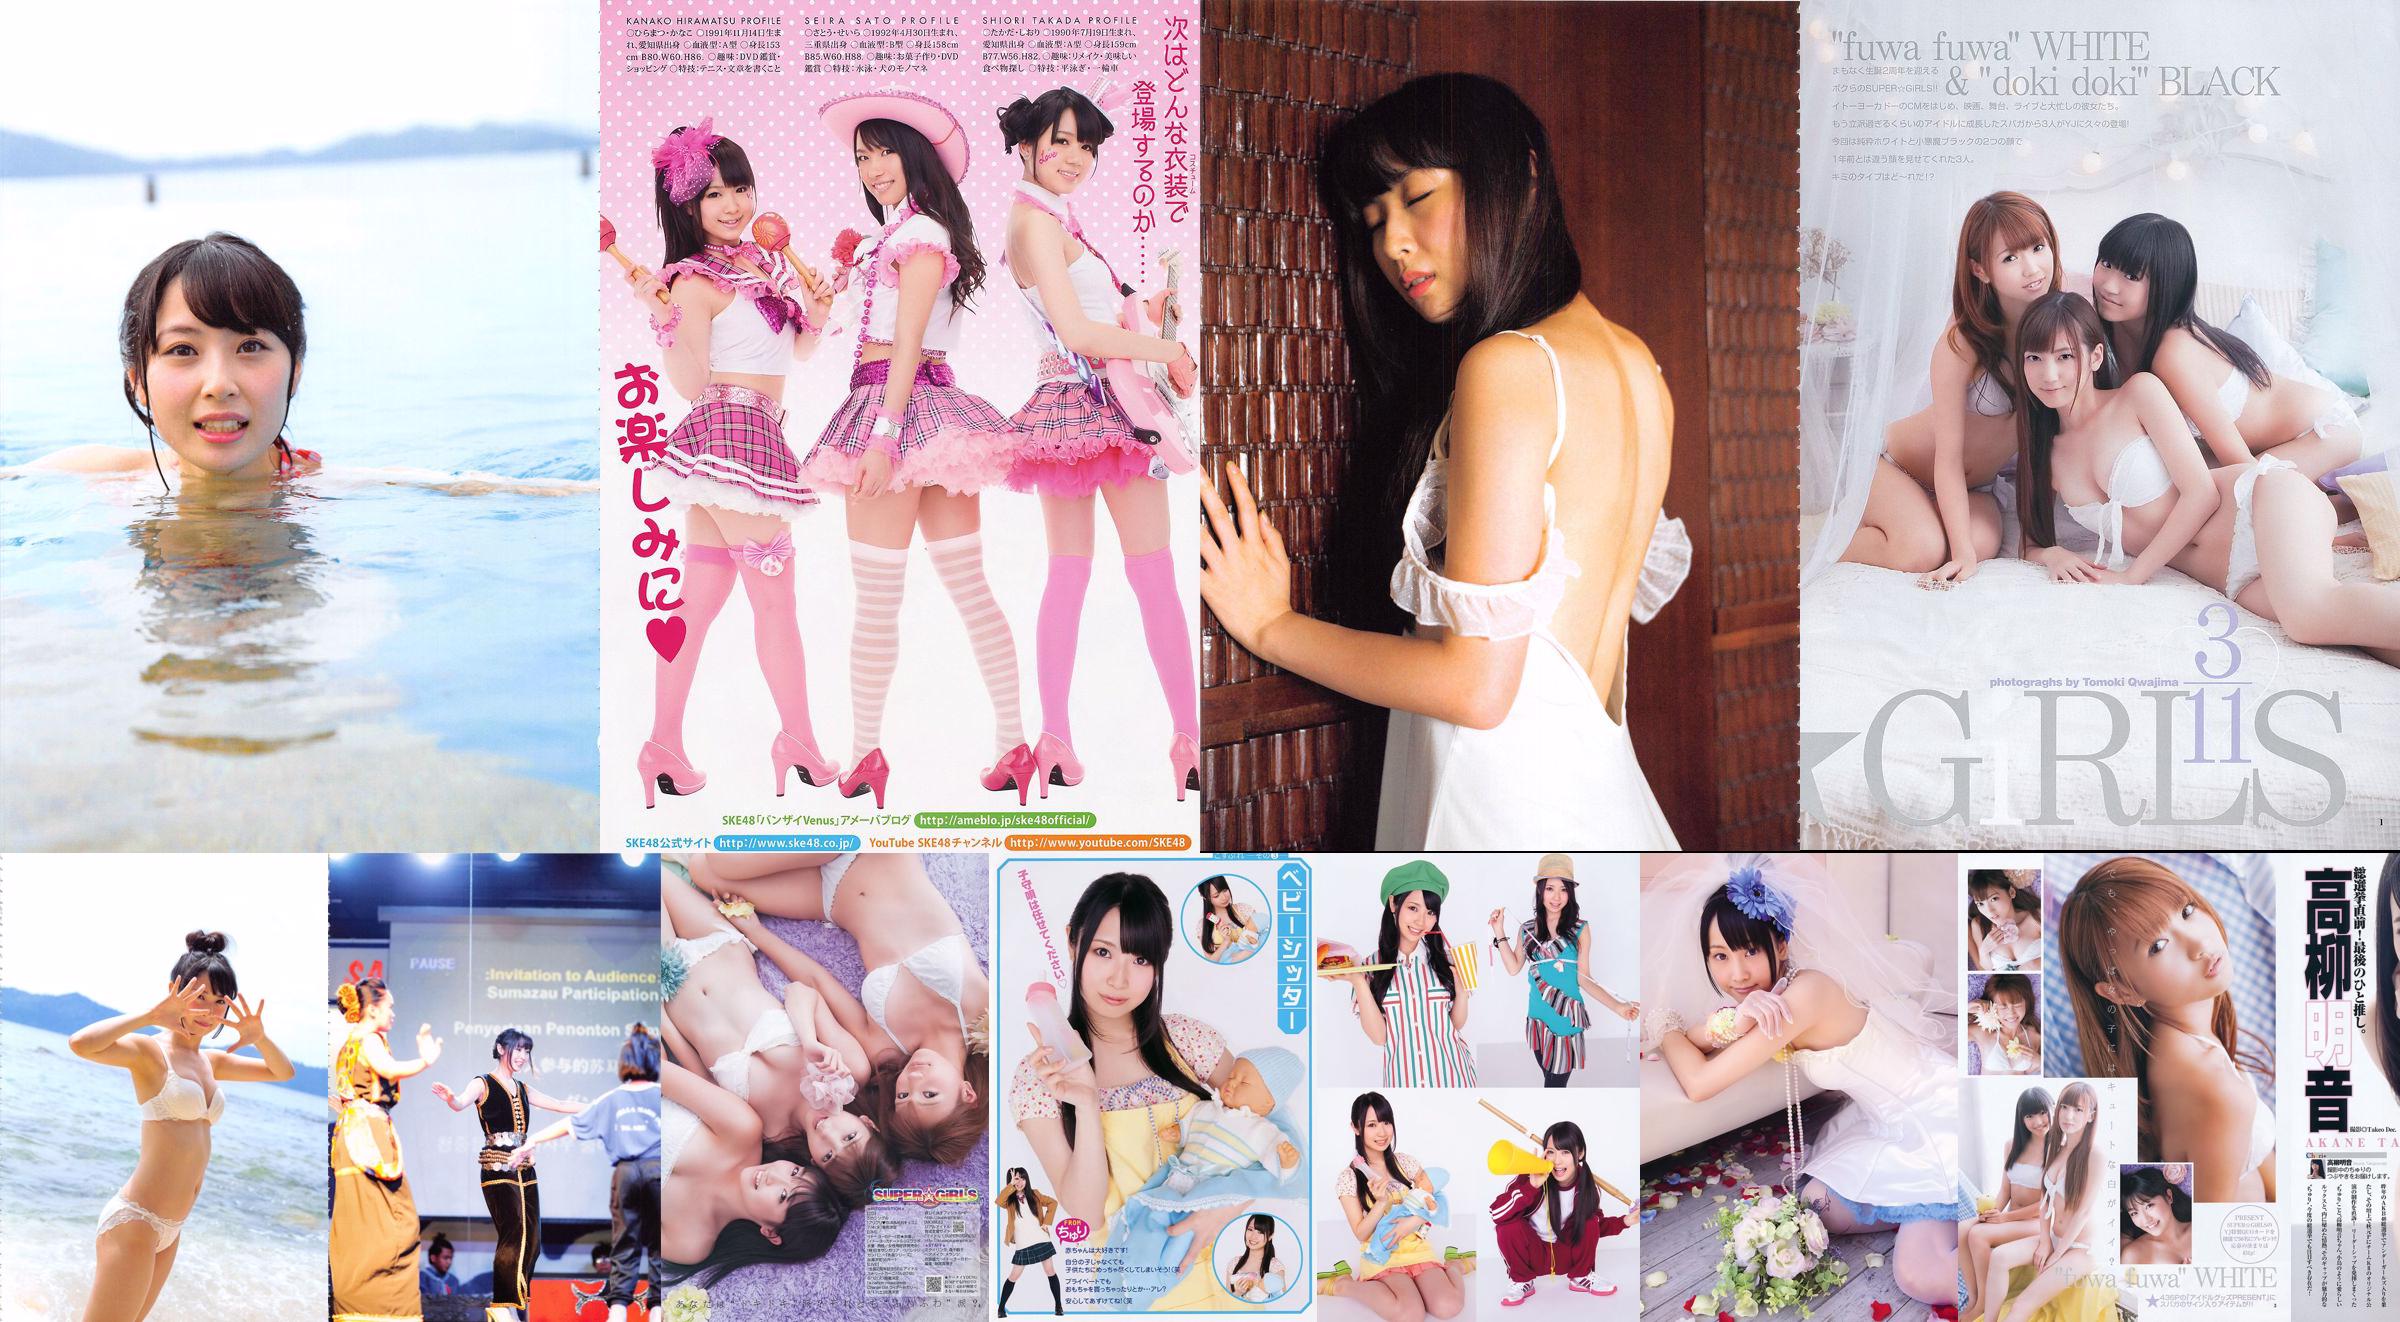 Akane Takayanagi SKE48 Fujii Sherry Asakura Sorrow Shinsaki Shiori [Young Animal] Tạp chí ảnh số 11 năm 2011 No.638275 Trang 23